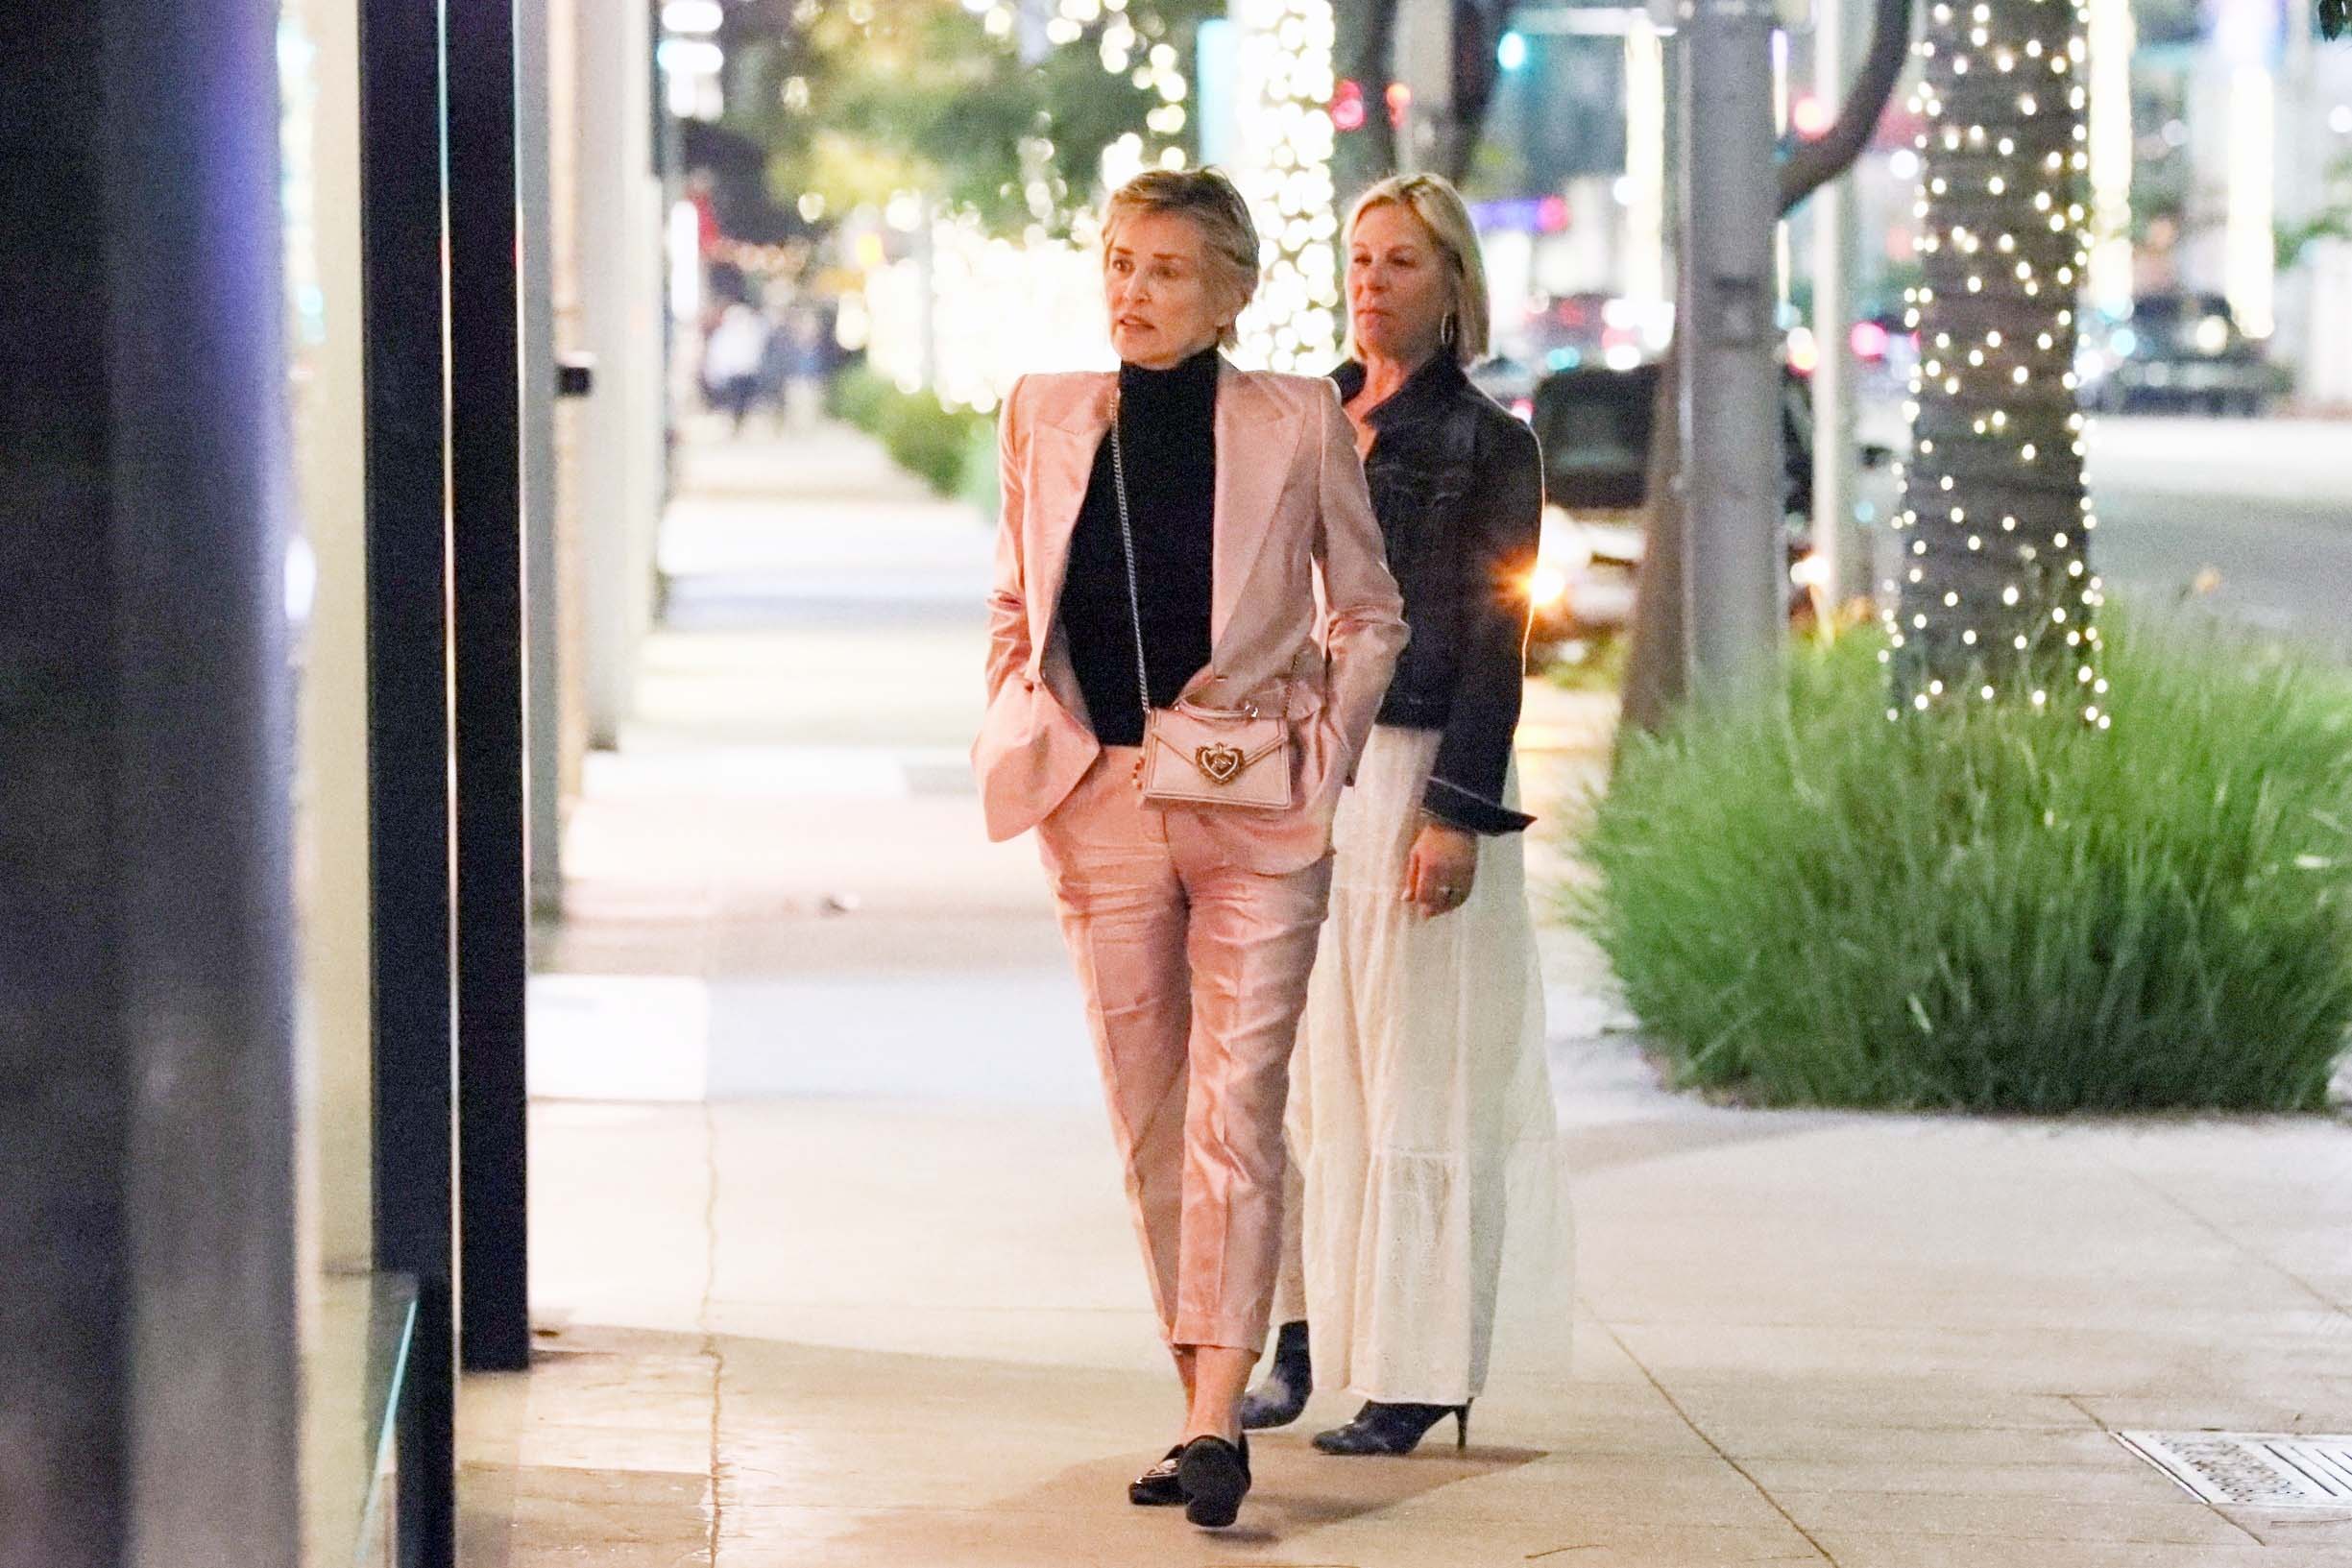 Sharon Stone recorrió las tiendas más exclusivas de Rodeo Drive, en Beverly Hills. Fue fotografiada mientras disfrutaba de las vidrieras acompañada por una amiga. Lució un conjunto de pantalón y saco rosa que combinó con su cartera, y llevó zapatos y blusa negra